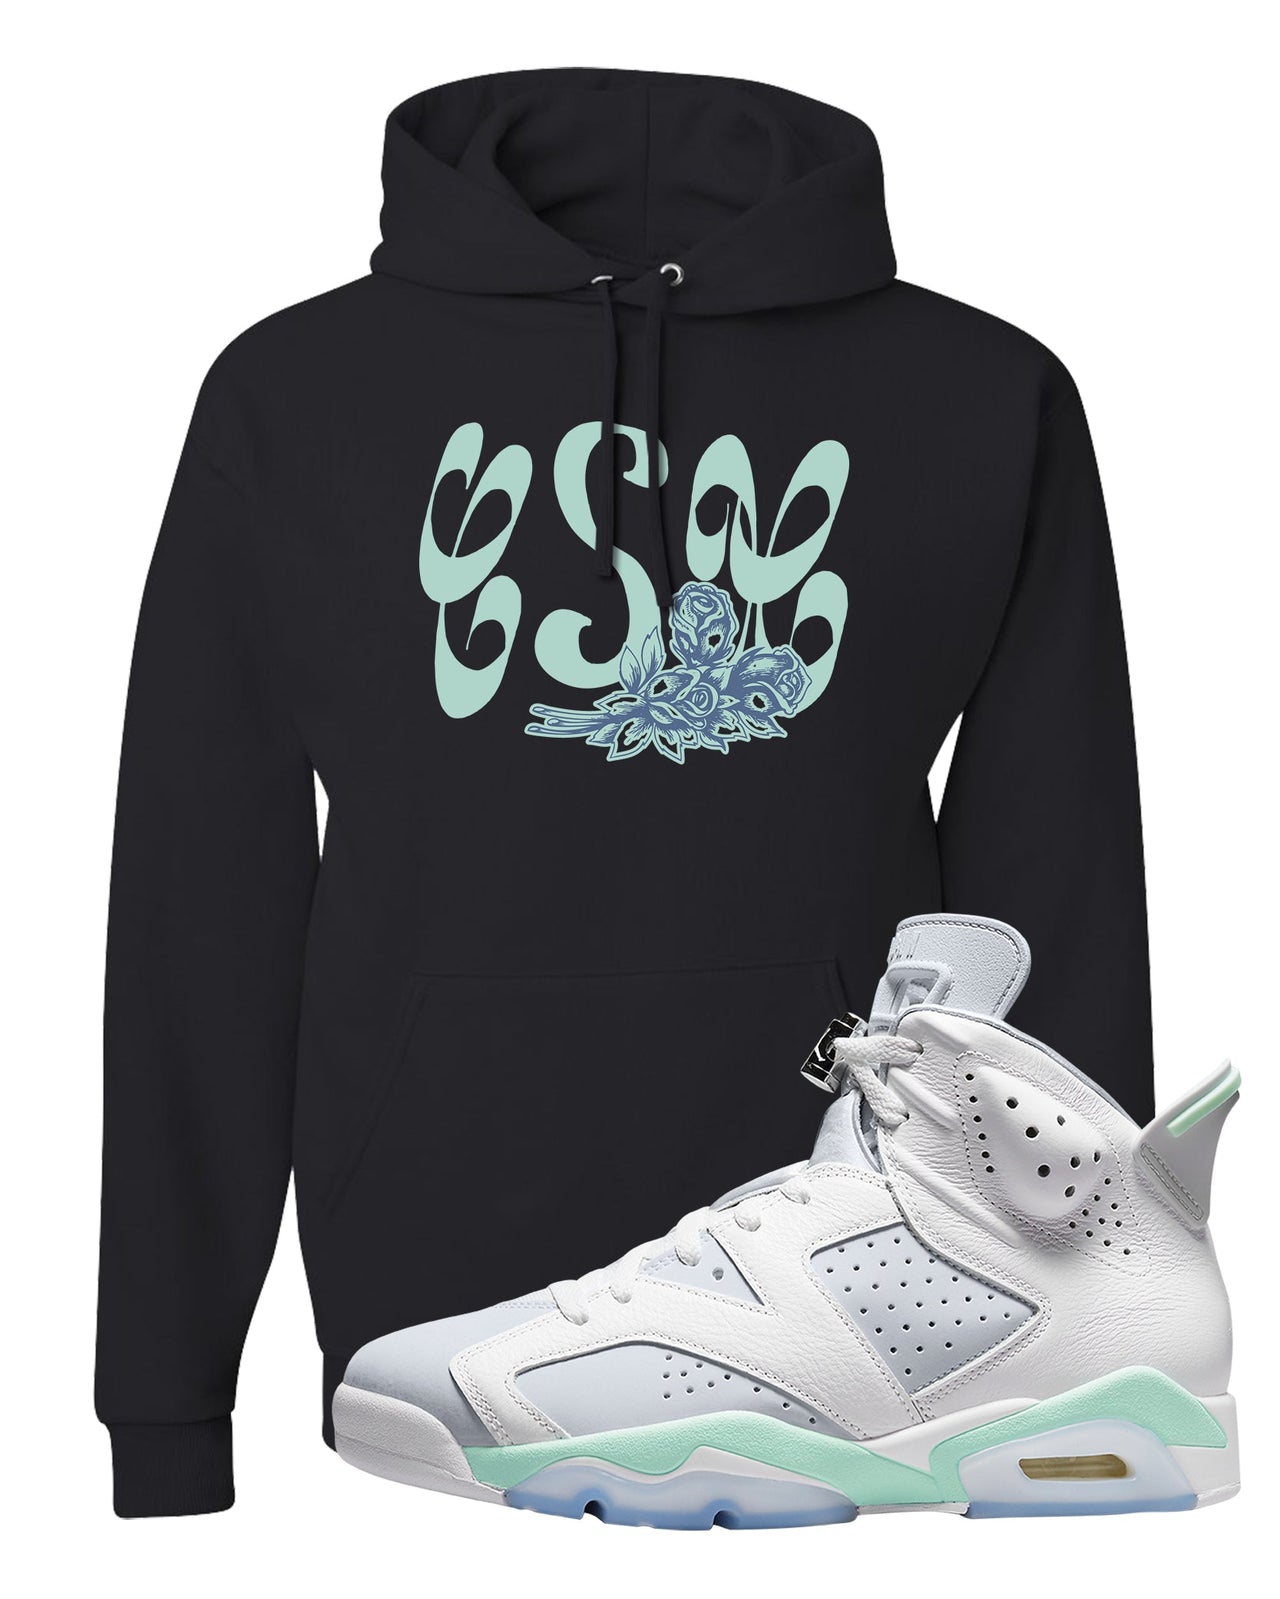 Mint Foam 6s Hoodie | Certified Sneakerhead, Black